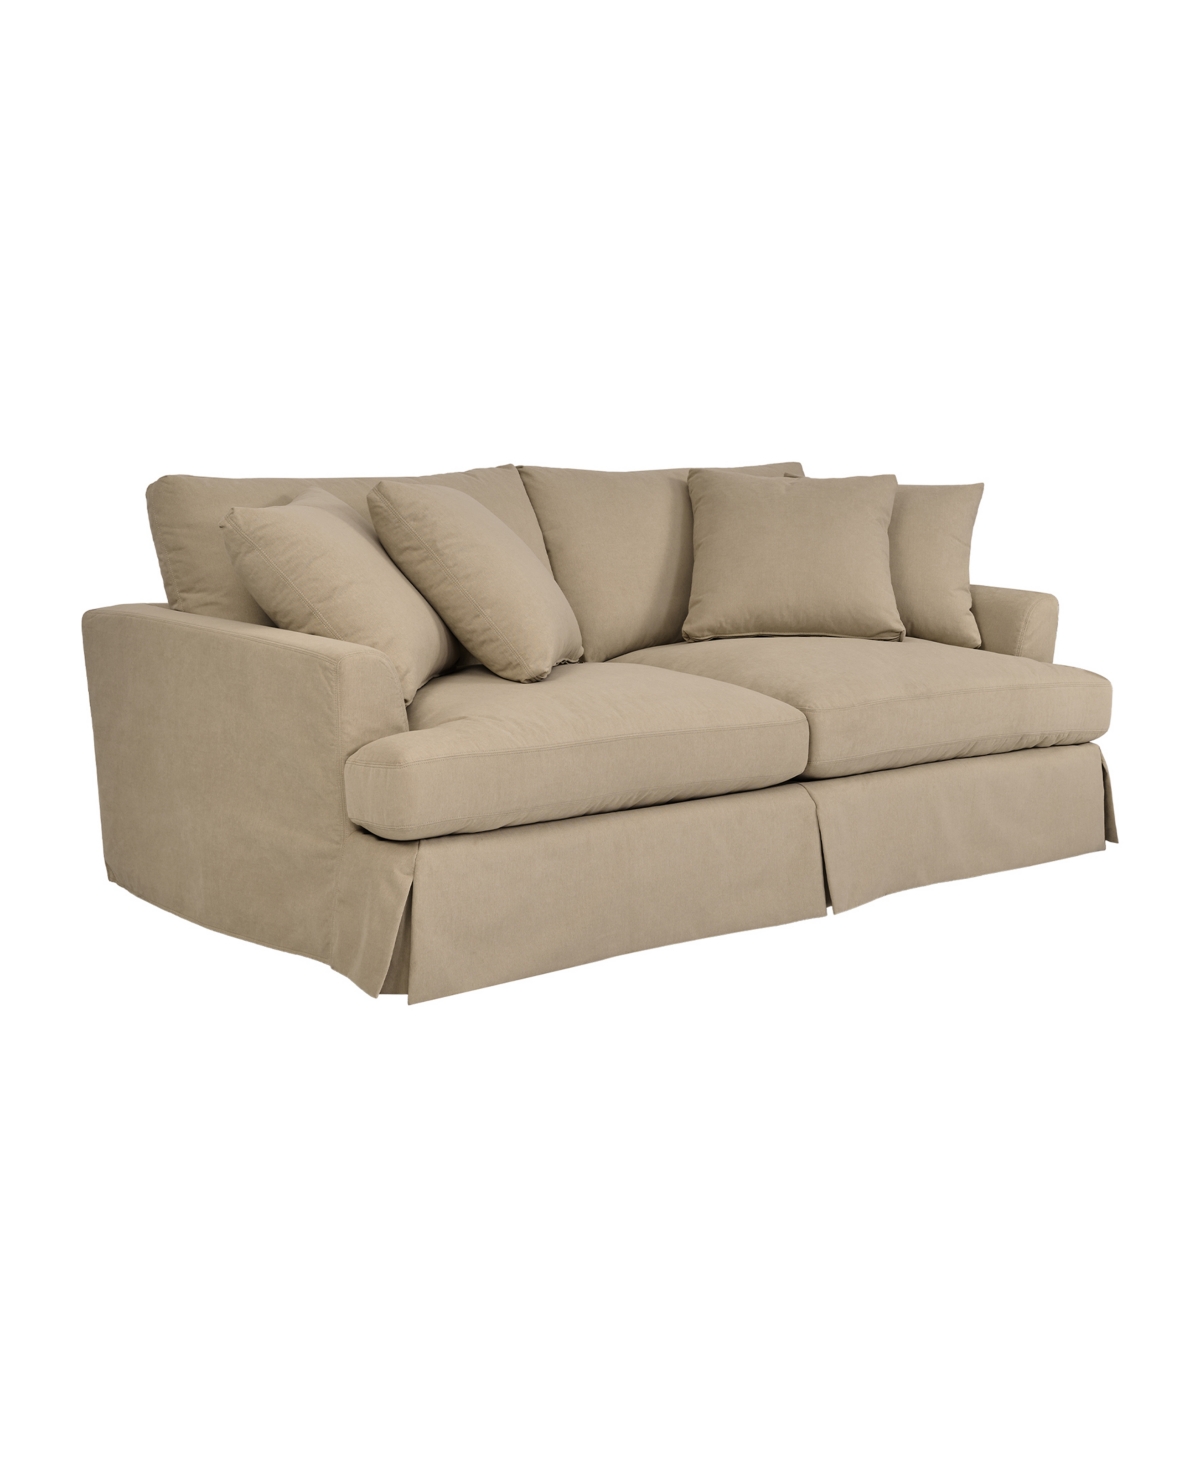 Armen Living Ciara 93" Upholstered Sofa In Sahara Brown,black